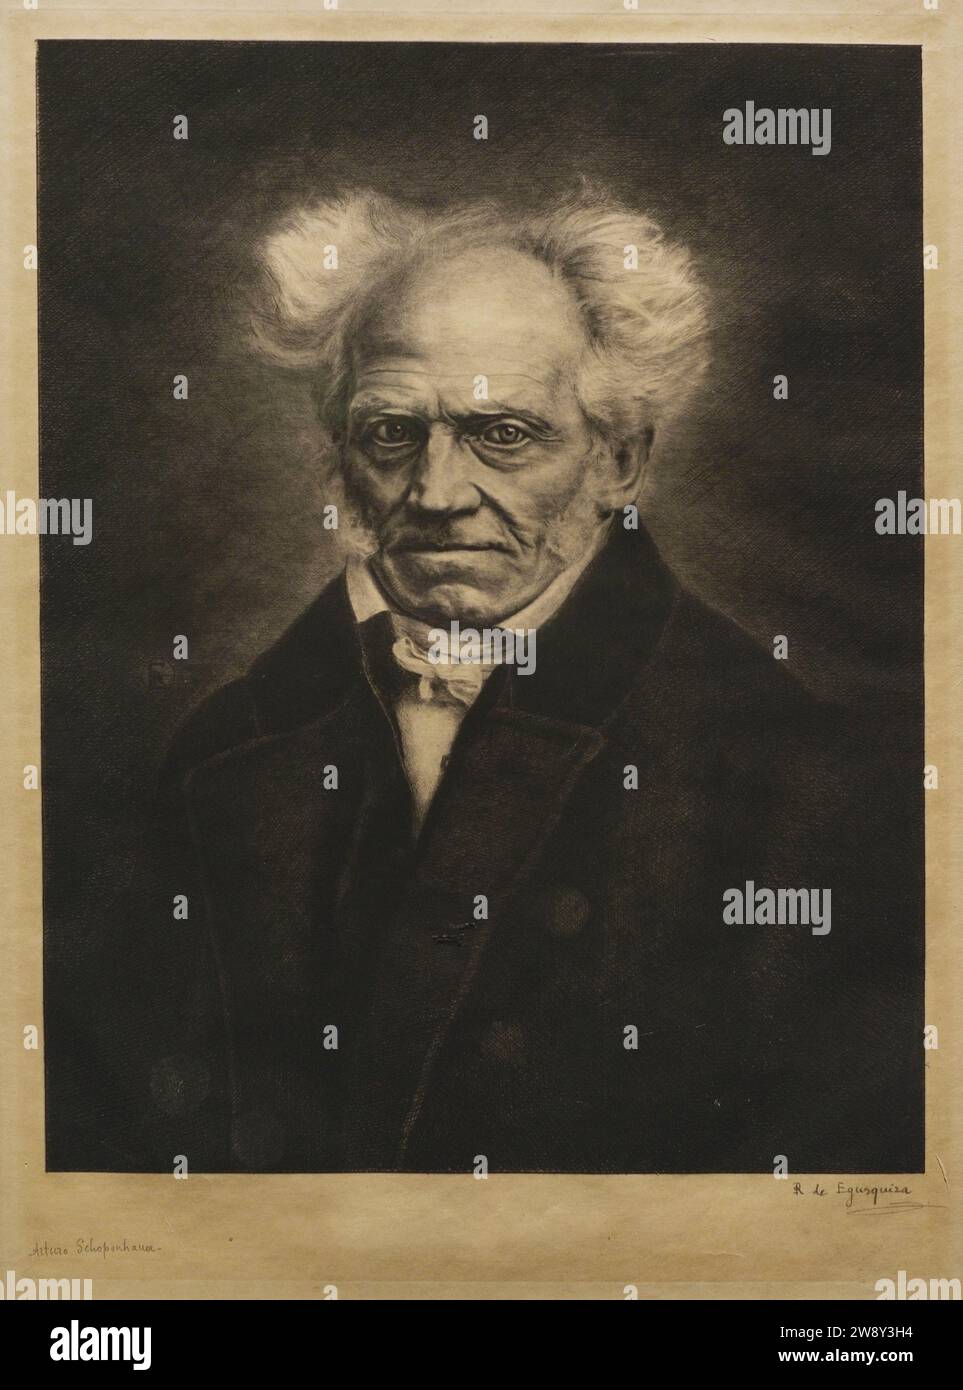 Arthur Schopenhauer (1788-1860). Deutscher Philosoph. Porträt von Rogelio de Egusquiza (1845-1915), 1885-1888. Ätzen auf Papier, 462 x 360 mm. Prado-Museum. Madrid. Spanien. Autor: Rogelio de Egusquiza y Barrena (1845-1915). Spanischer Maler. Stockfoto